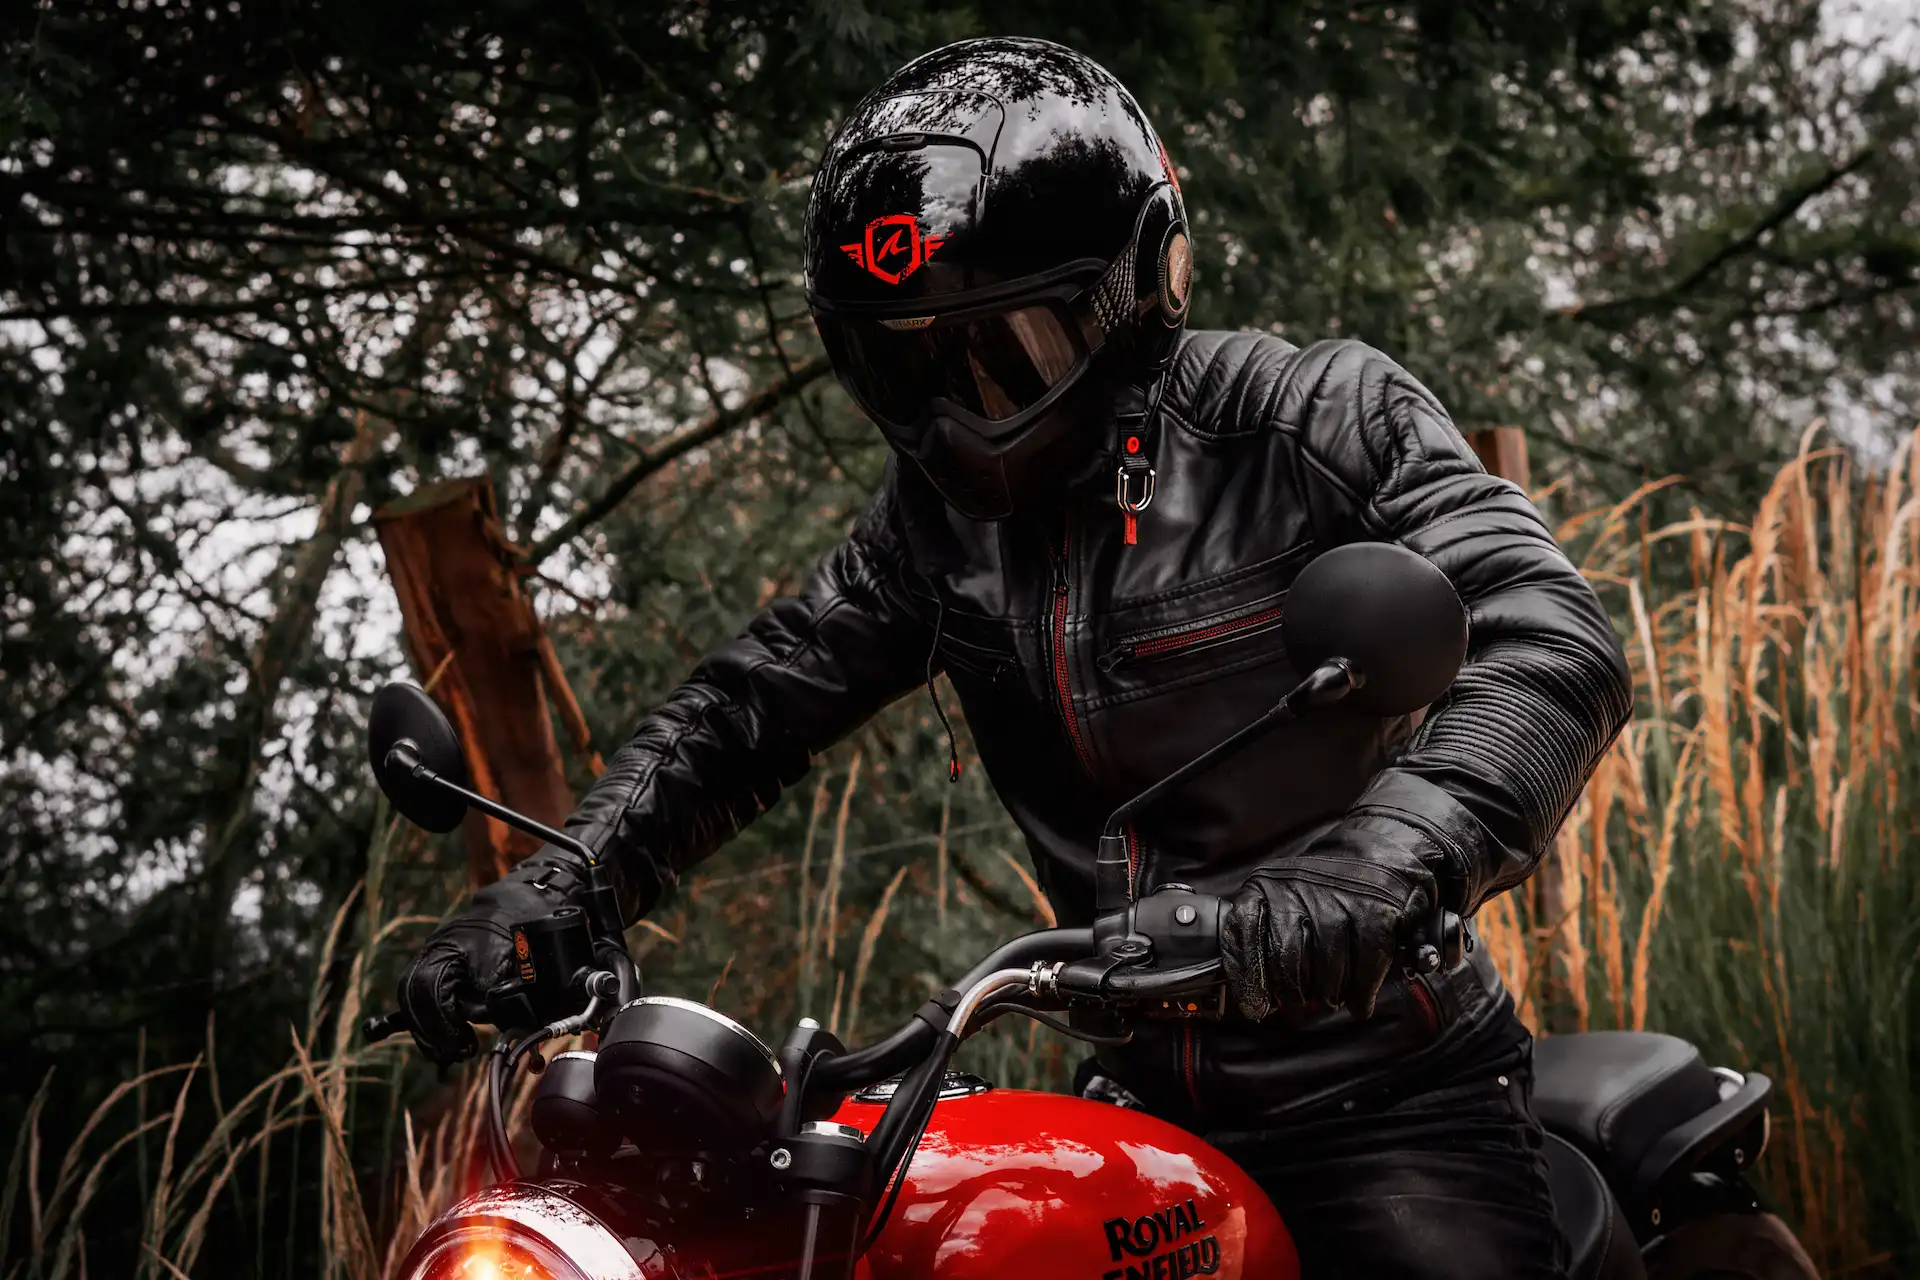 Comment bien choisir sa veste de moto?